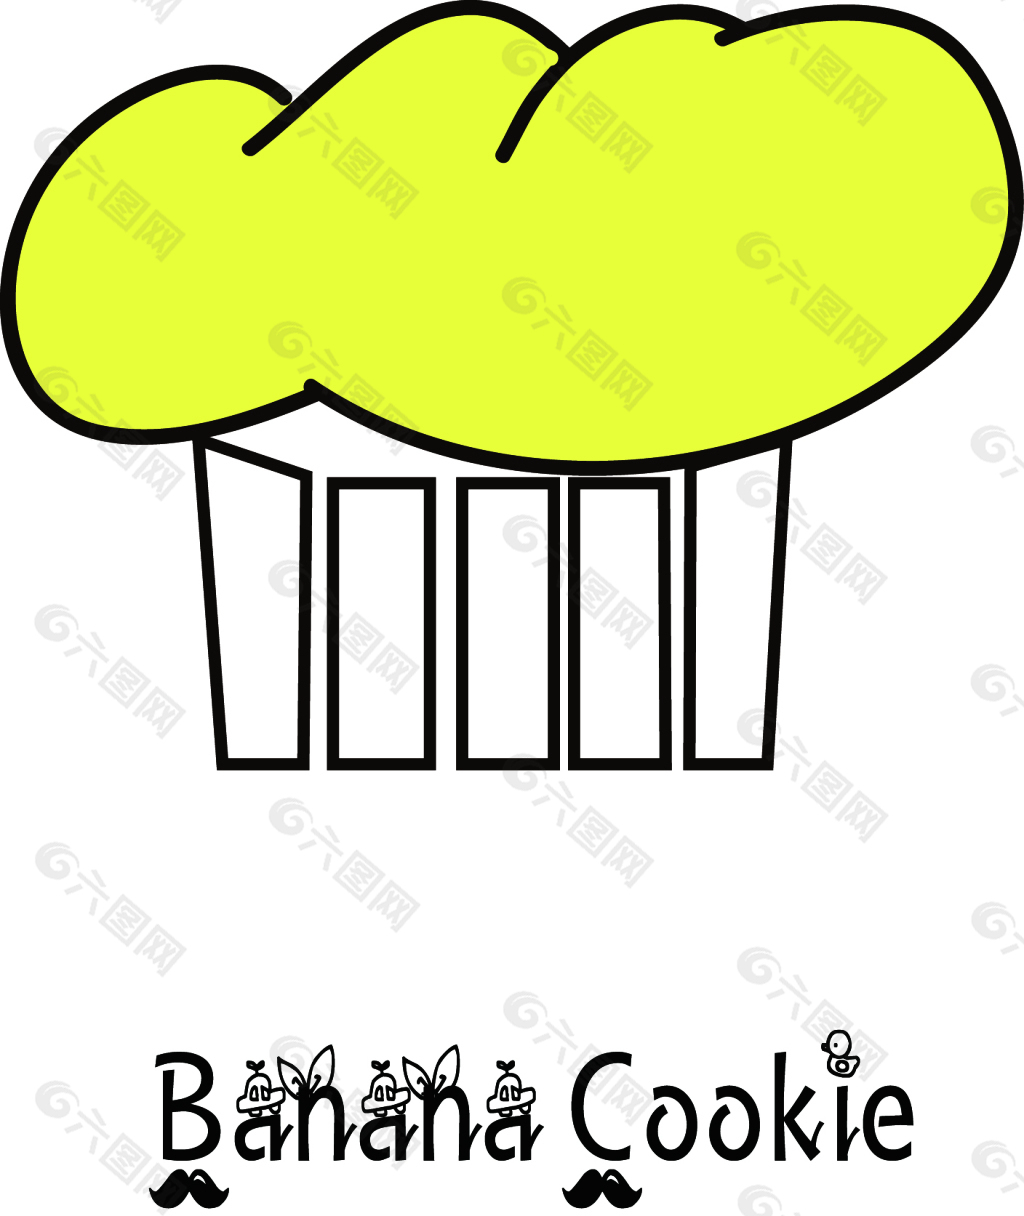 蛋糕烘培店logo设计